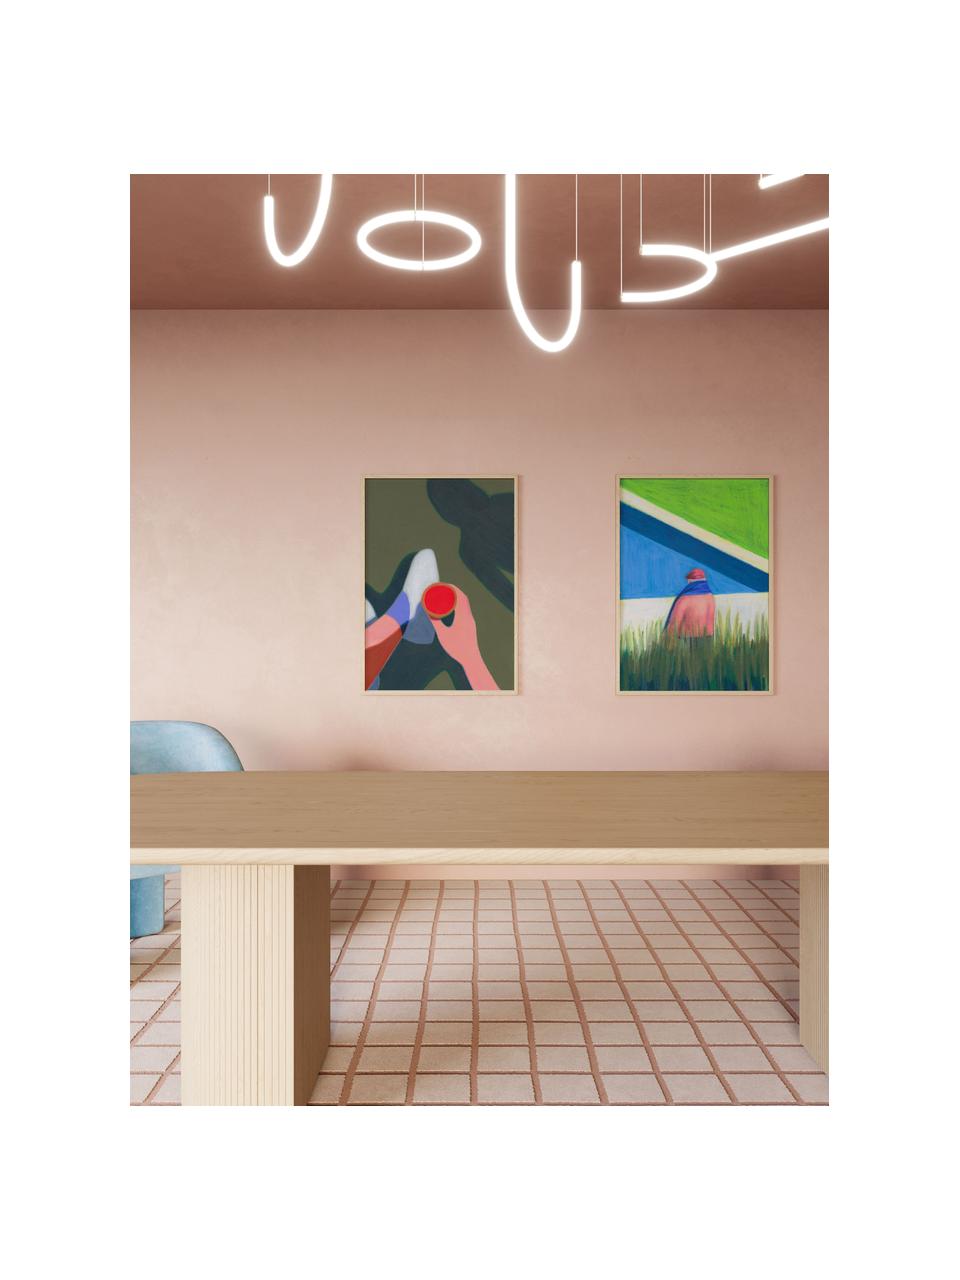 Plakát Les Vacances 01, 210g matný papír Hahnemühle, digitální tisk s 10 barvami odolnými vůči UV záření, Olivová, více barev, Š 30 cm, V 40 cm